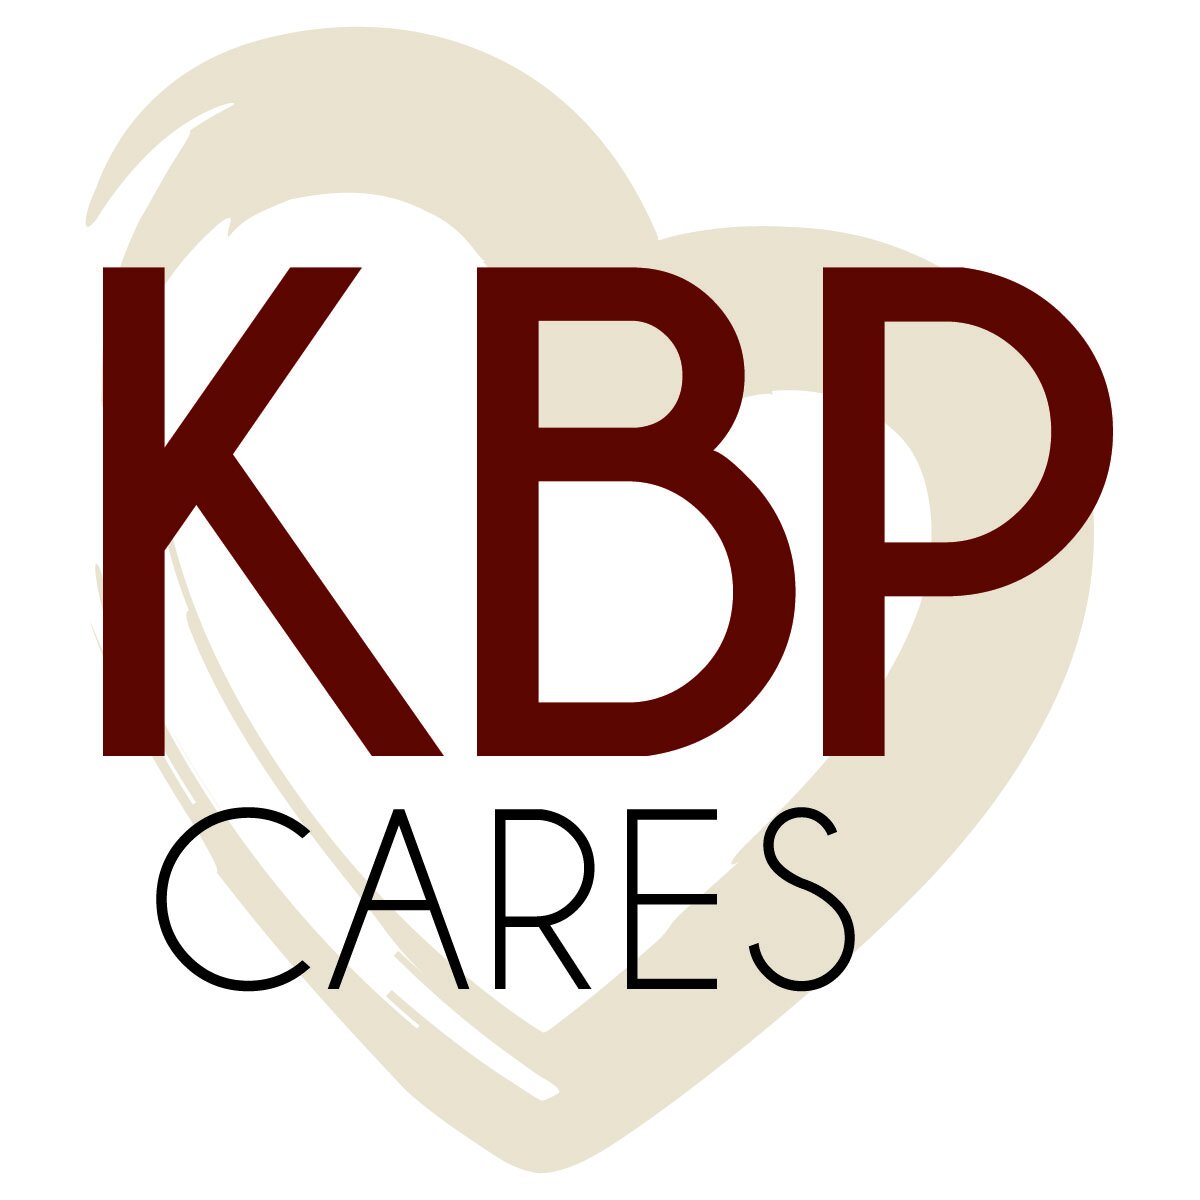 KBP CARES